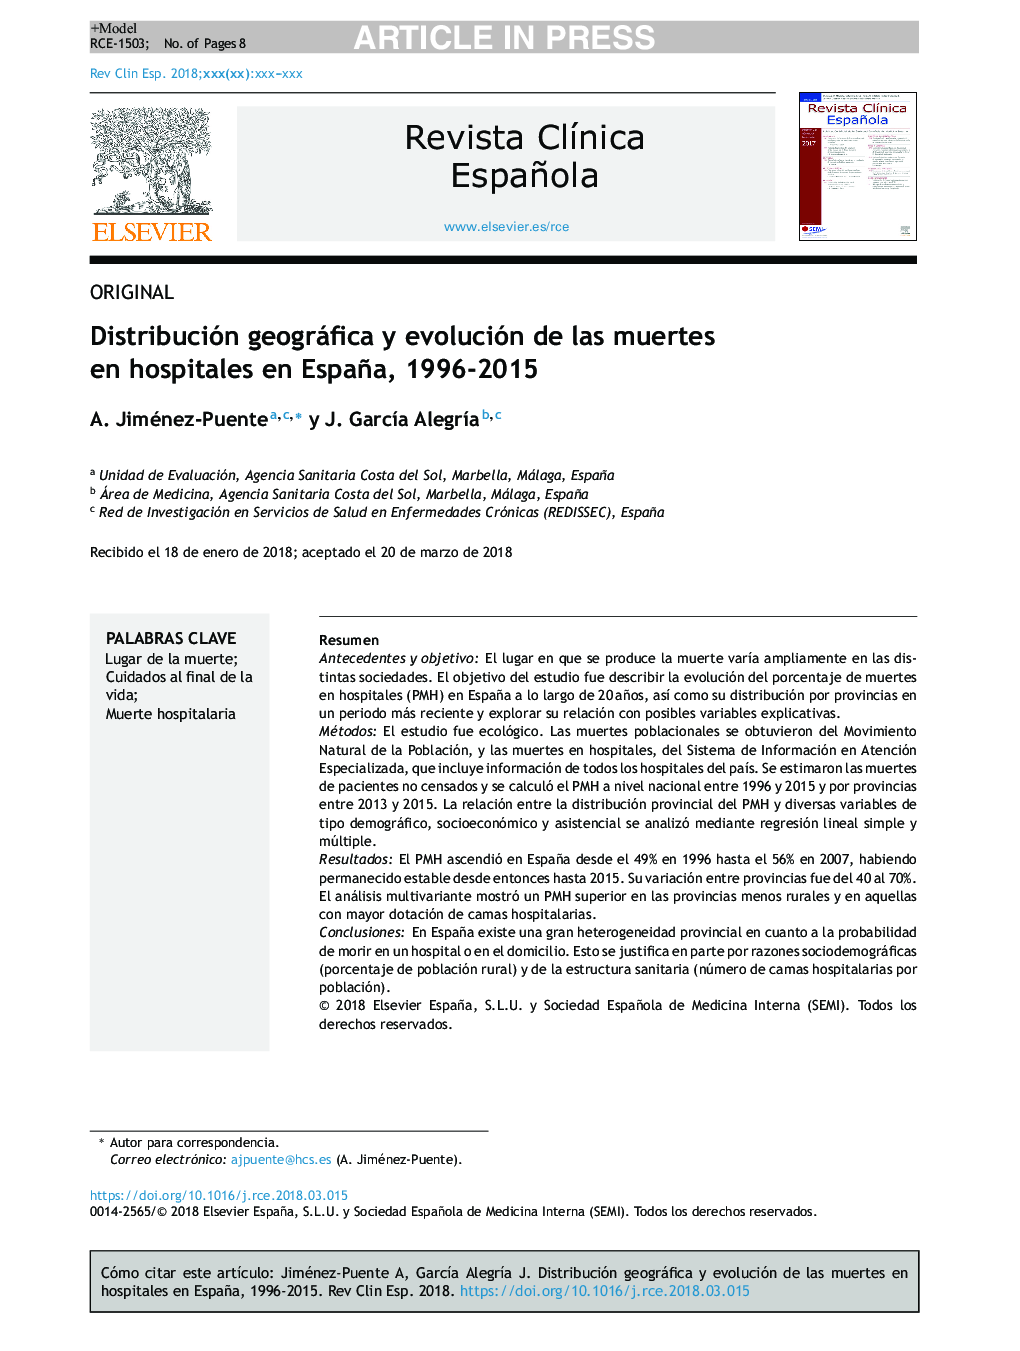 Distribución geográfica y evolución de las muertes en hospitales en España, 1996-2015